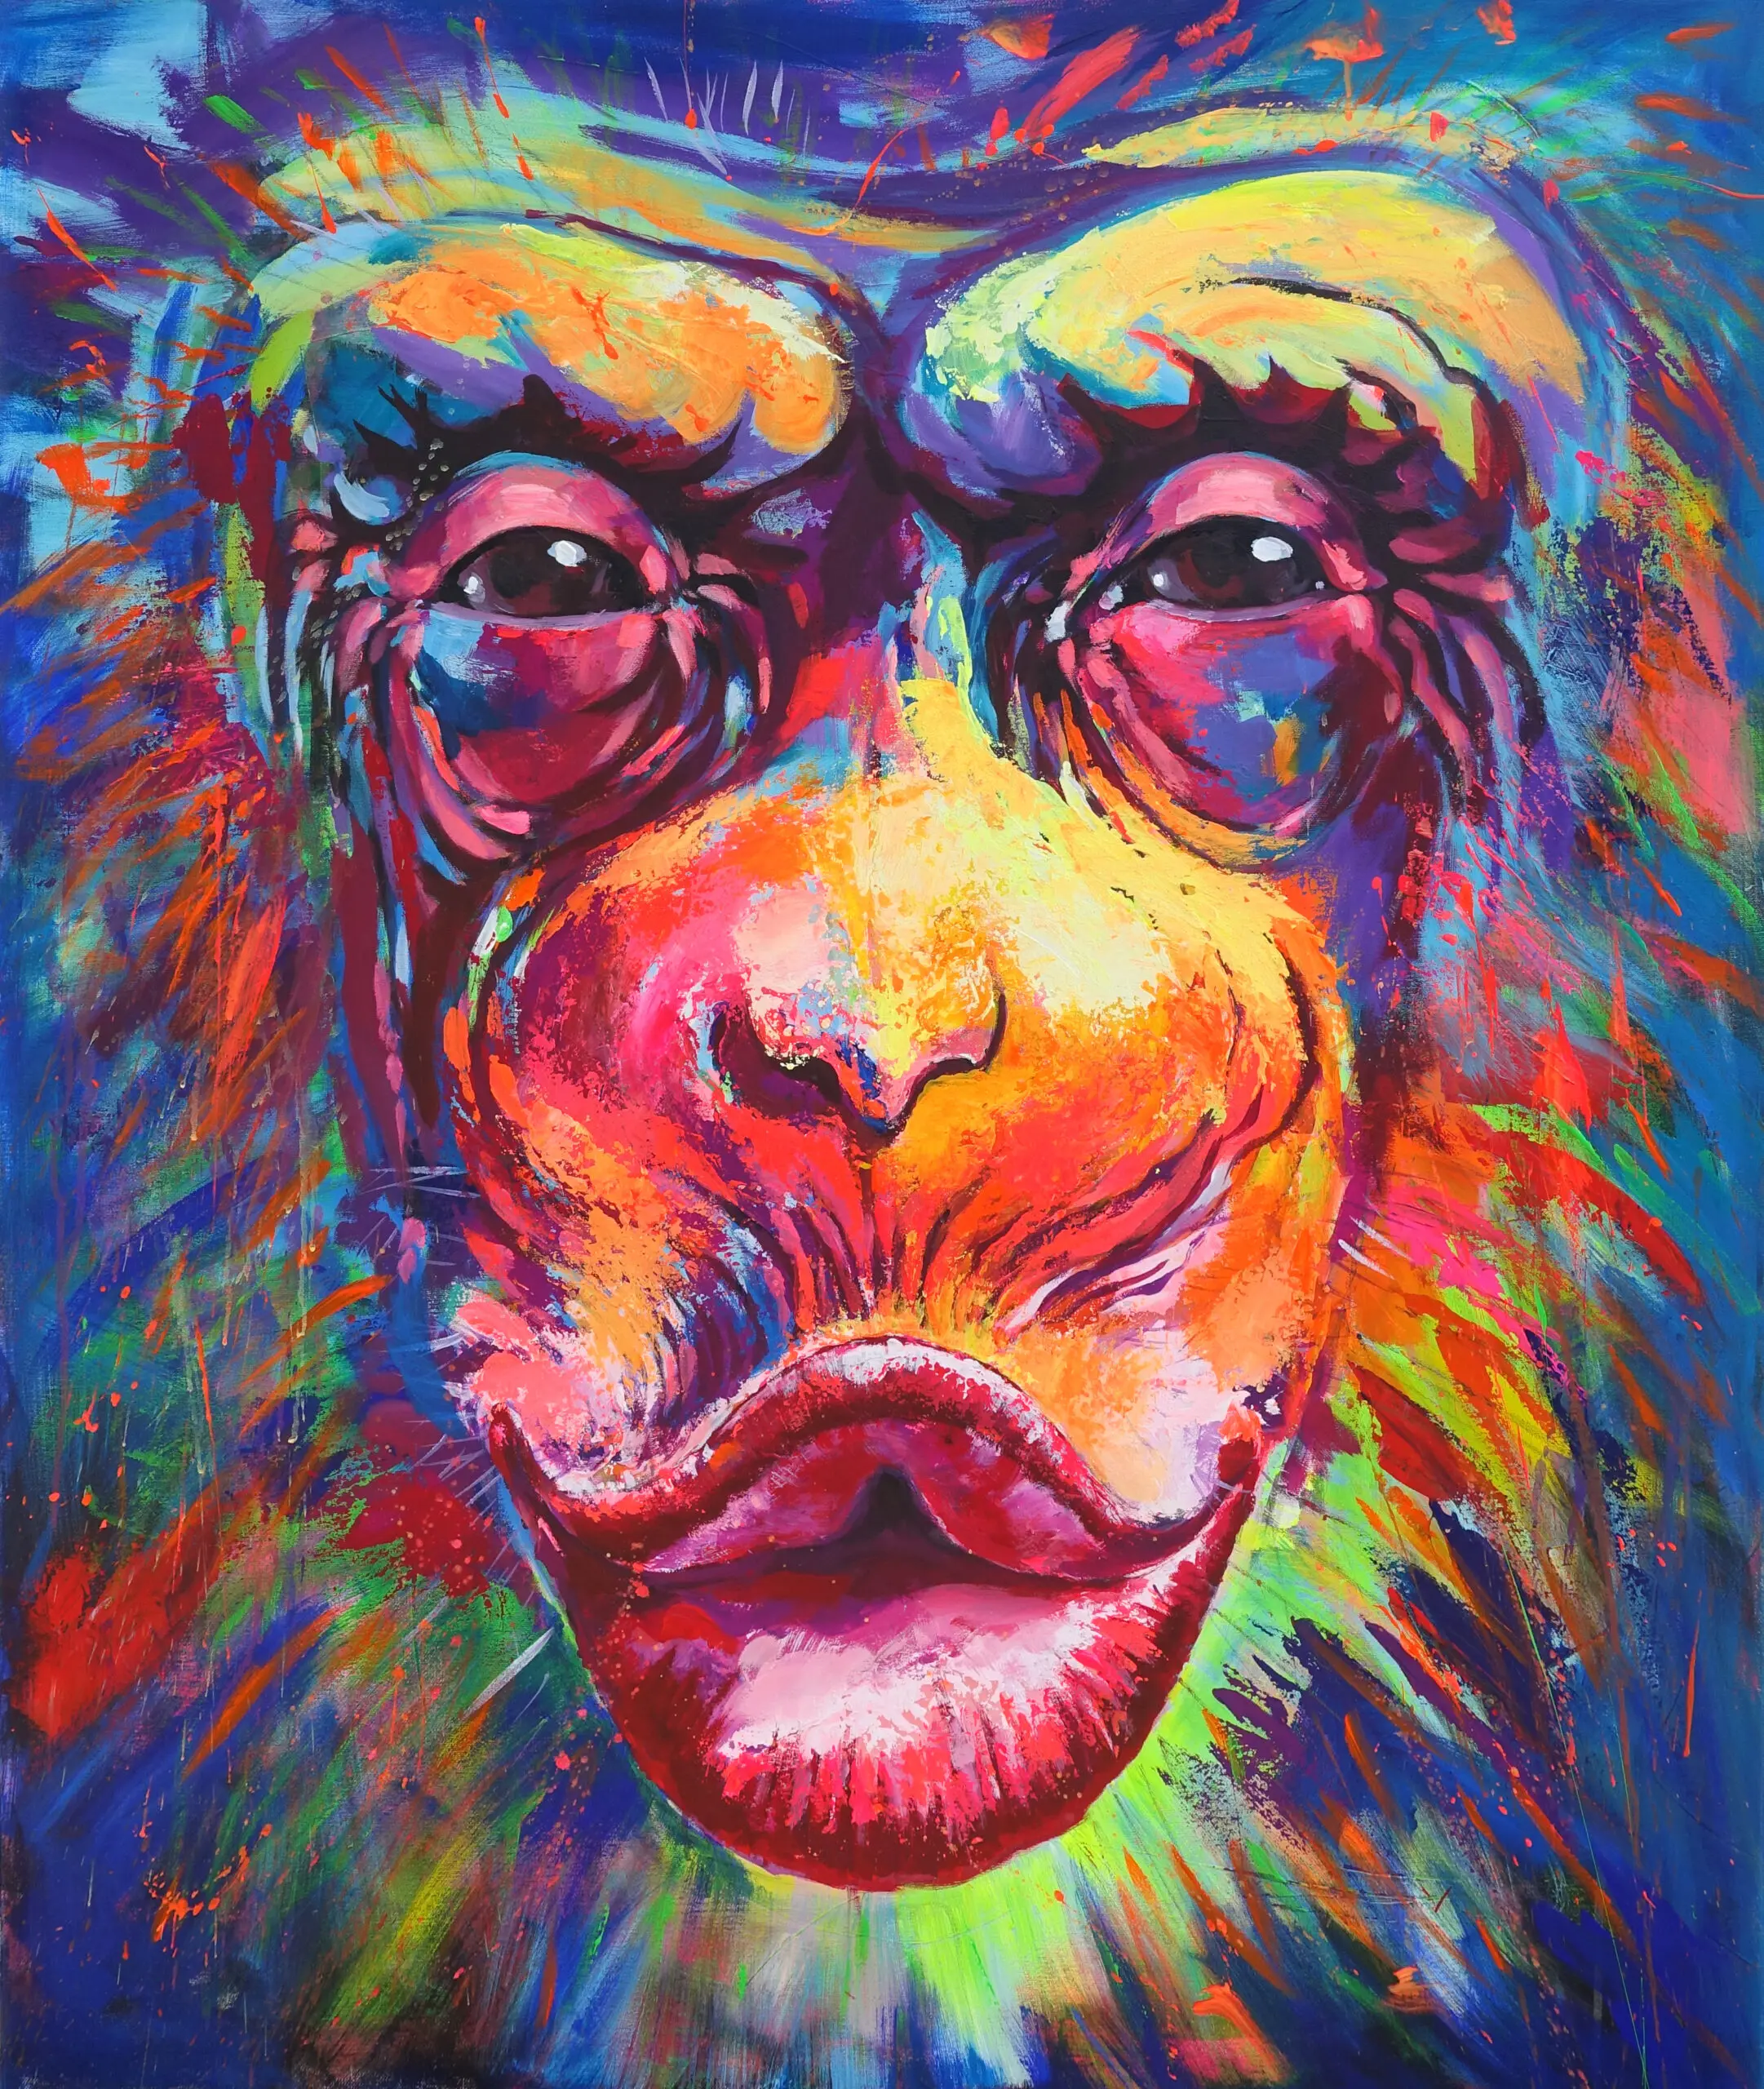 Wandbild (5546) Kissing Monkey präsentiert: Stillleben,Kreatives,Details und Strukturen,Tiere,Abstrakt,Natur,Modern,Retro,Sonstige Tiere,Wildtiere,Aus Afrika,Tiere